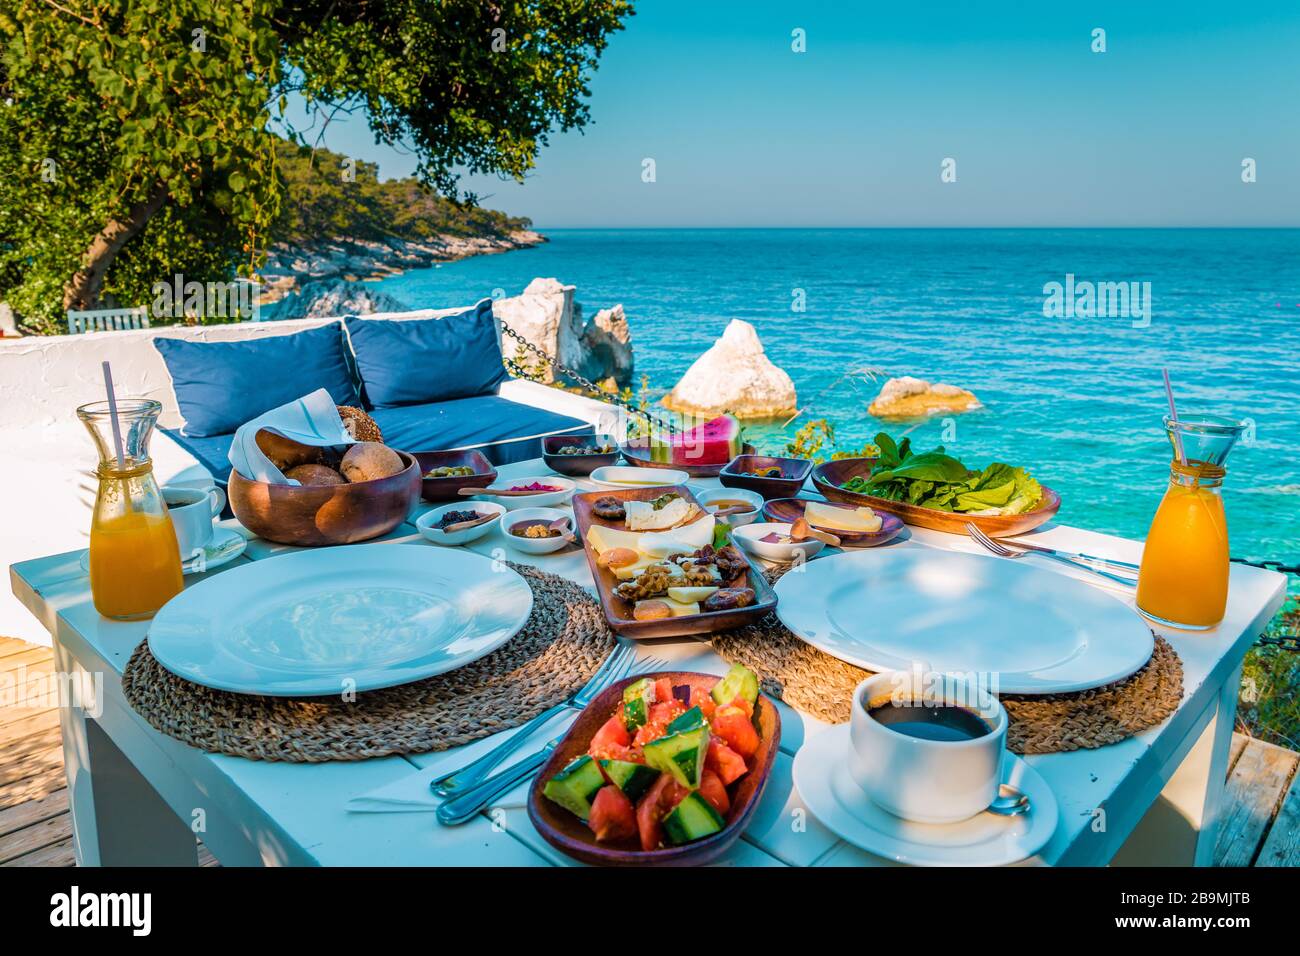 Aspects du mois de Juin - Page 8 Petit-dejeuner-turc-au-bord-de-l-ocean-complexe-de-luxe-en-turquie-avec-cafe-et-jus-de-fruits-2b9mjtb